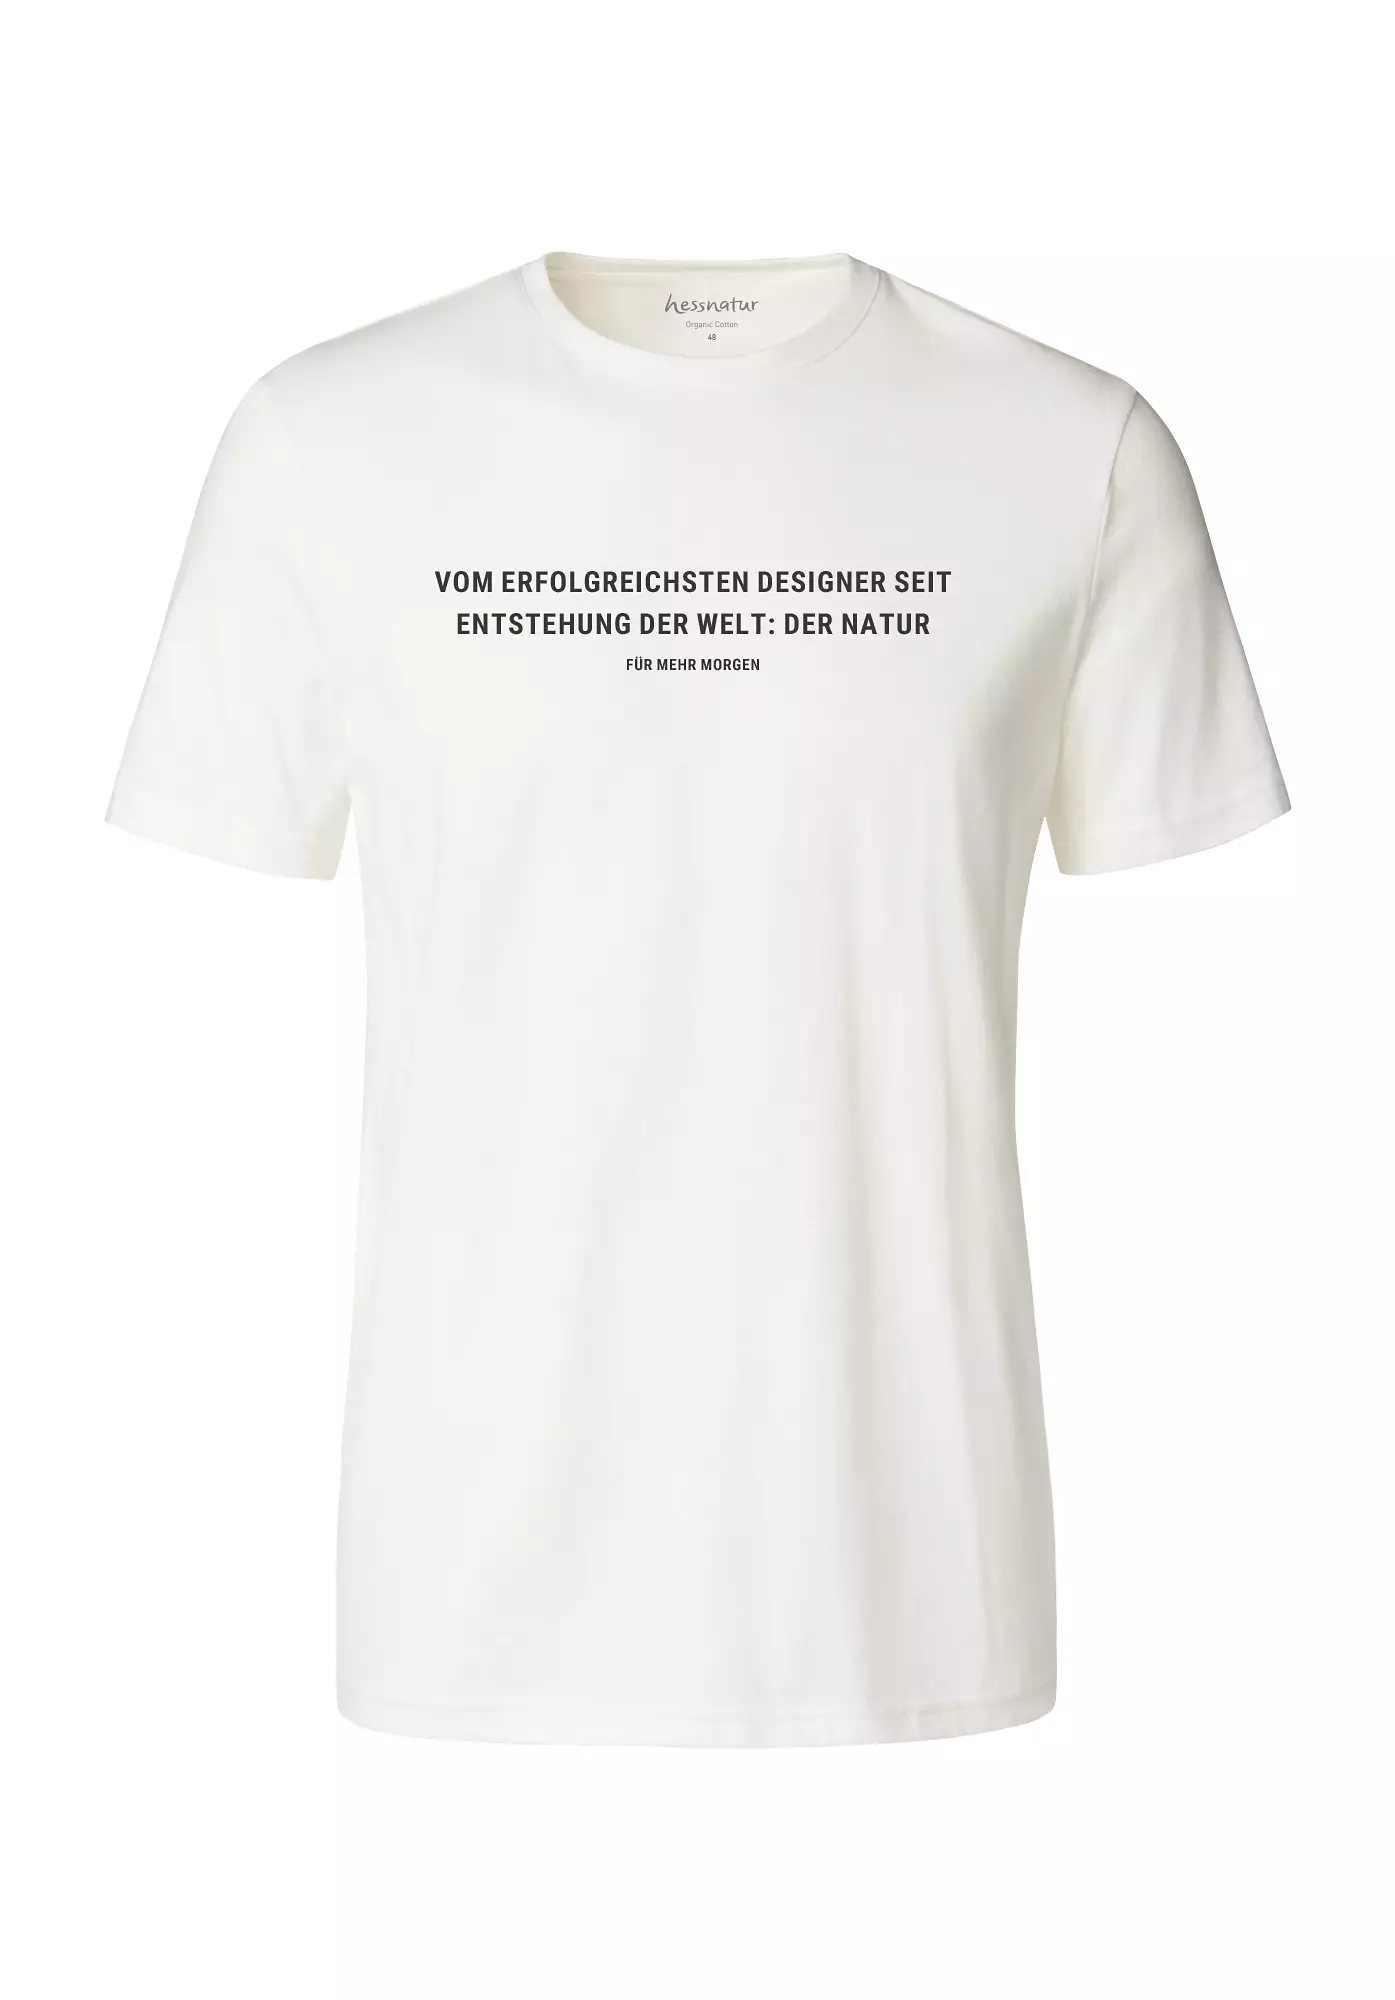 Statement Shirt aus reiner Bio-Baumwolle - 0